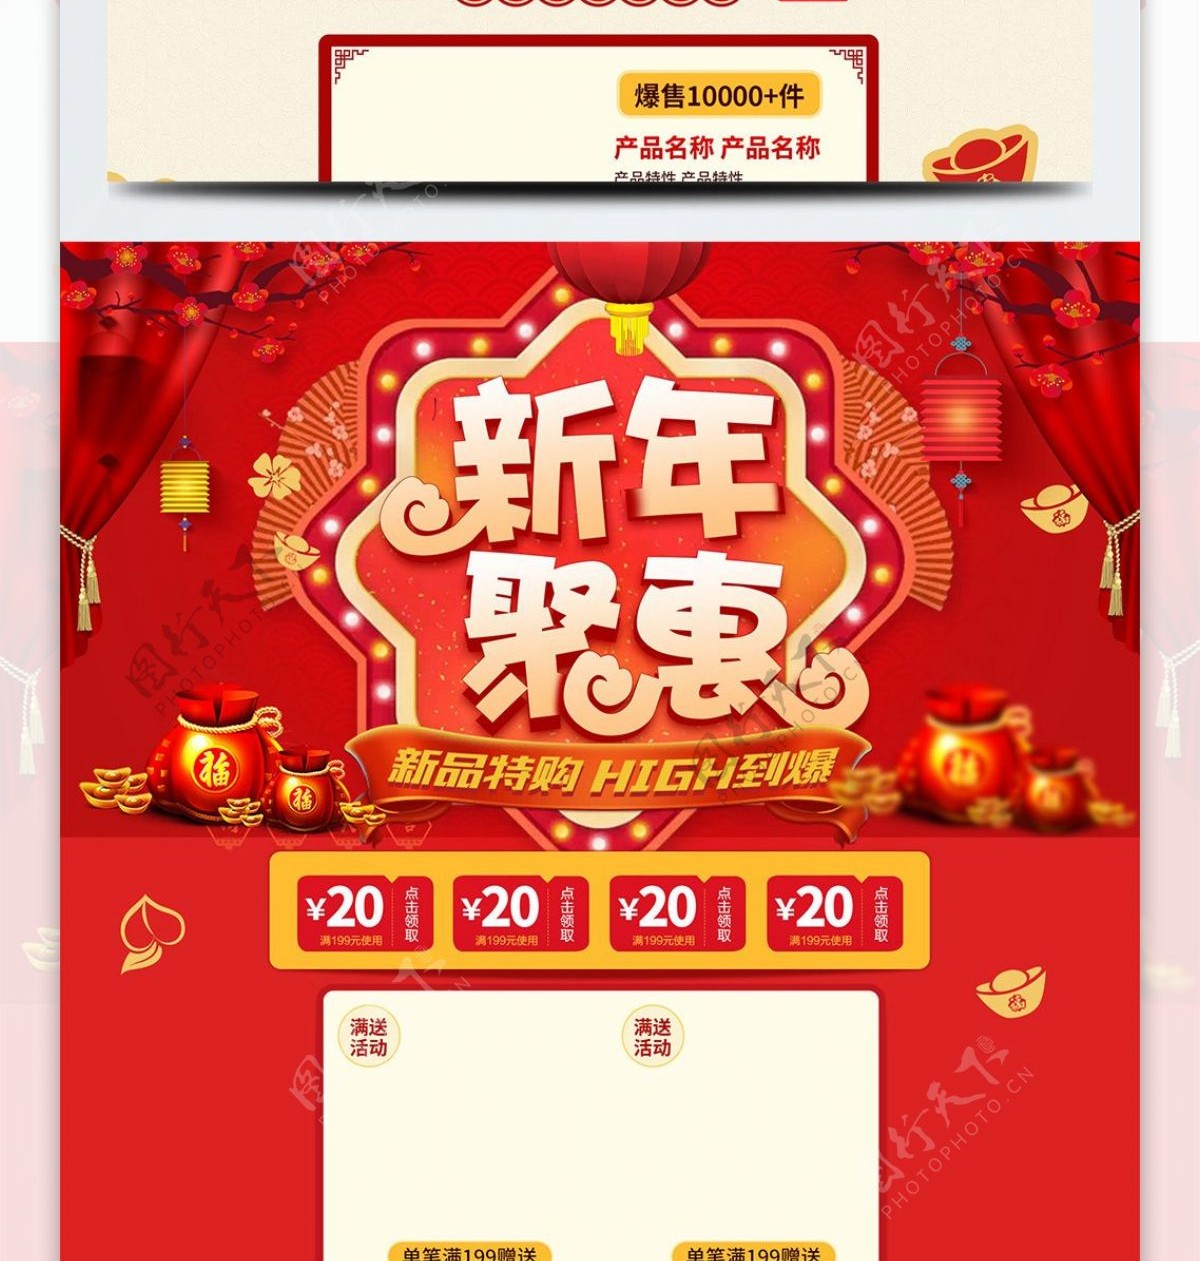 淘宝天猫电商促销新年聚惠首页模板